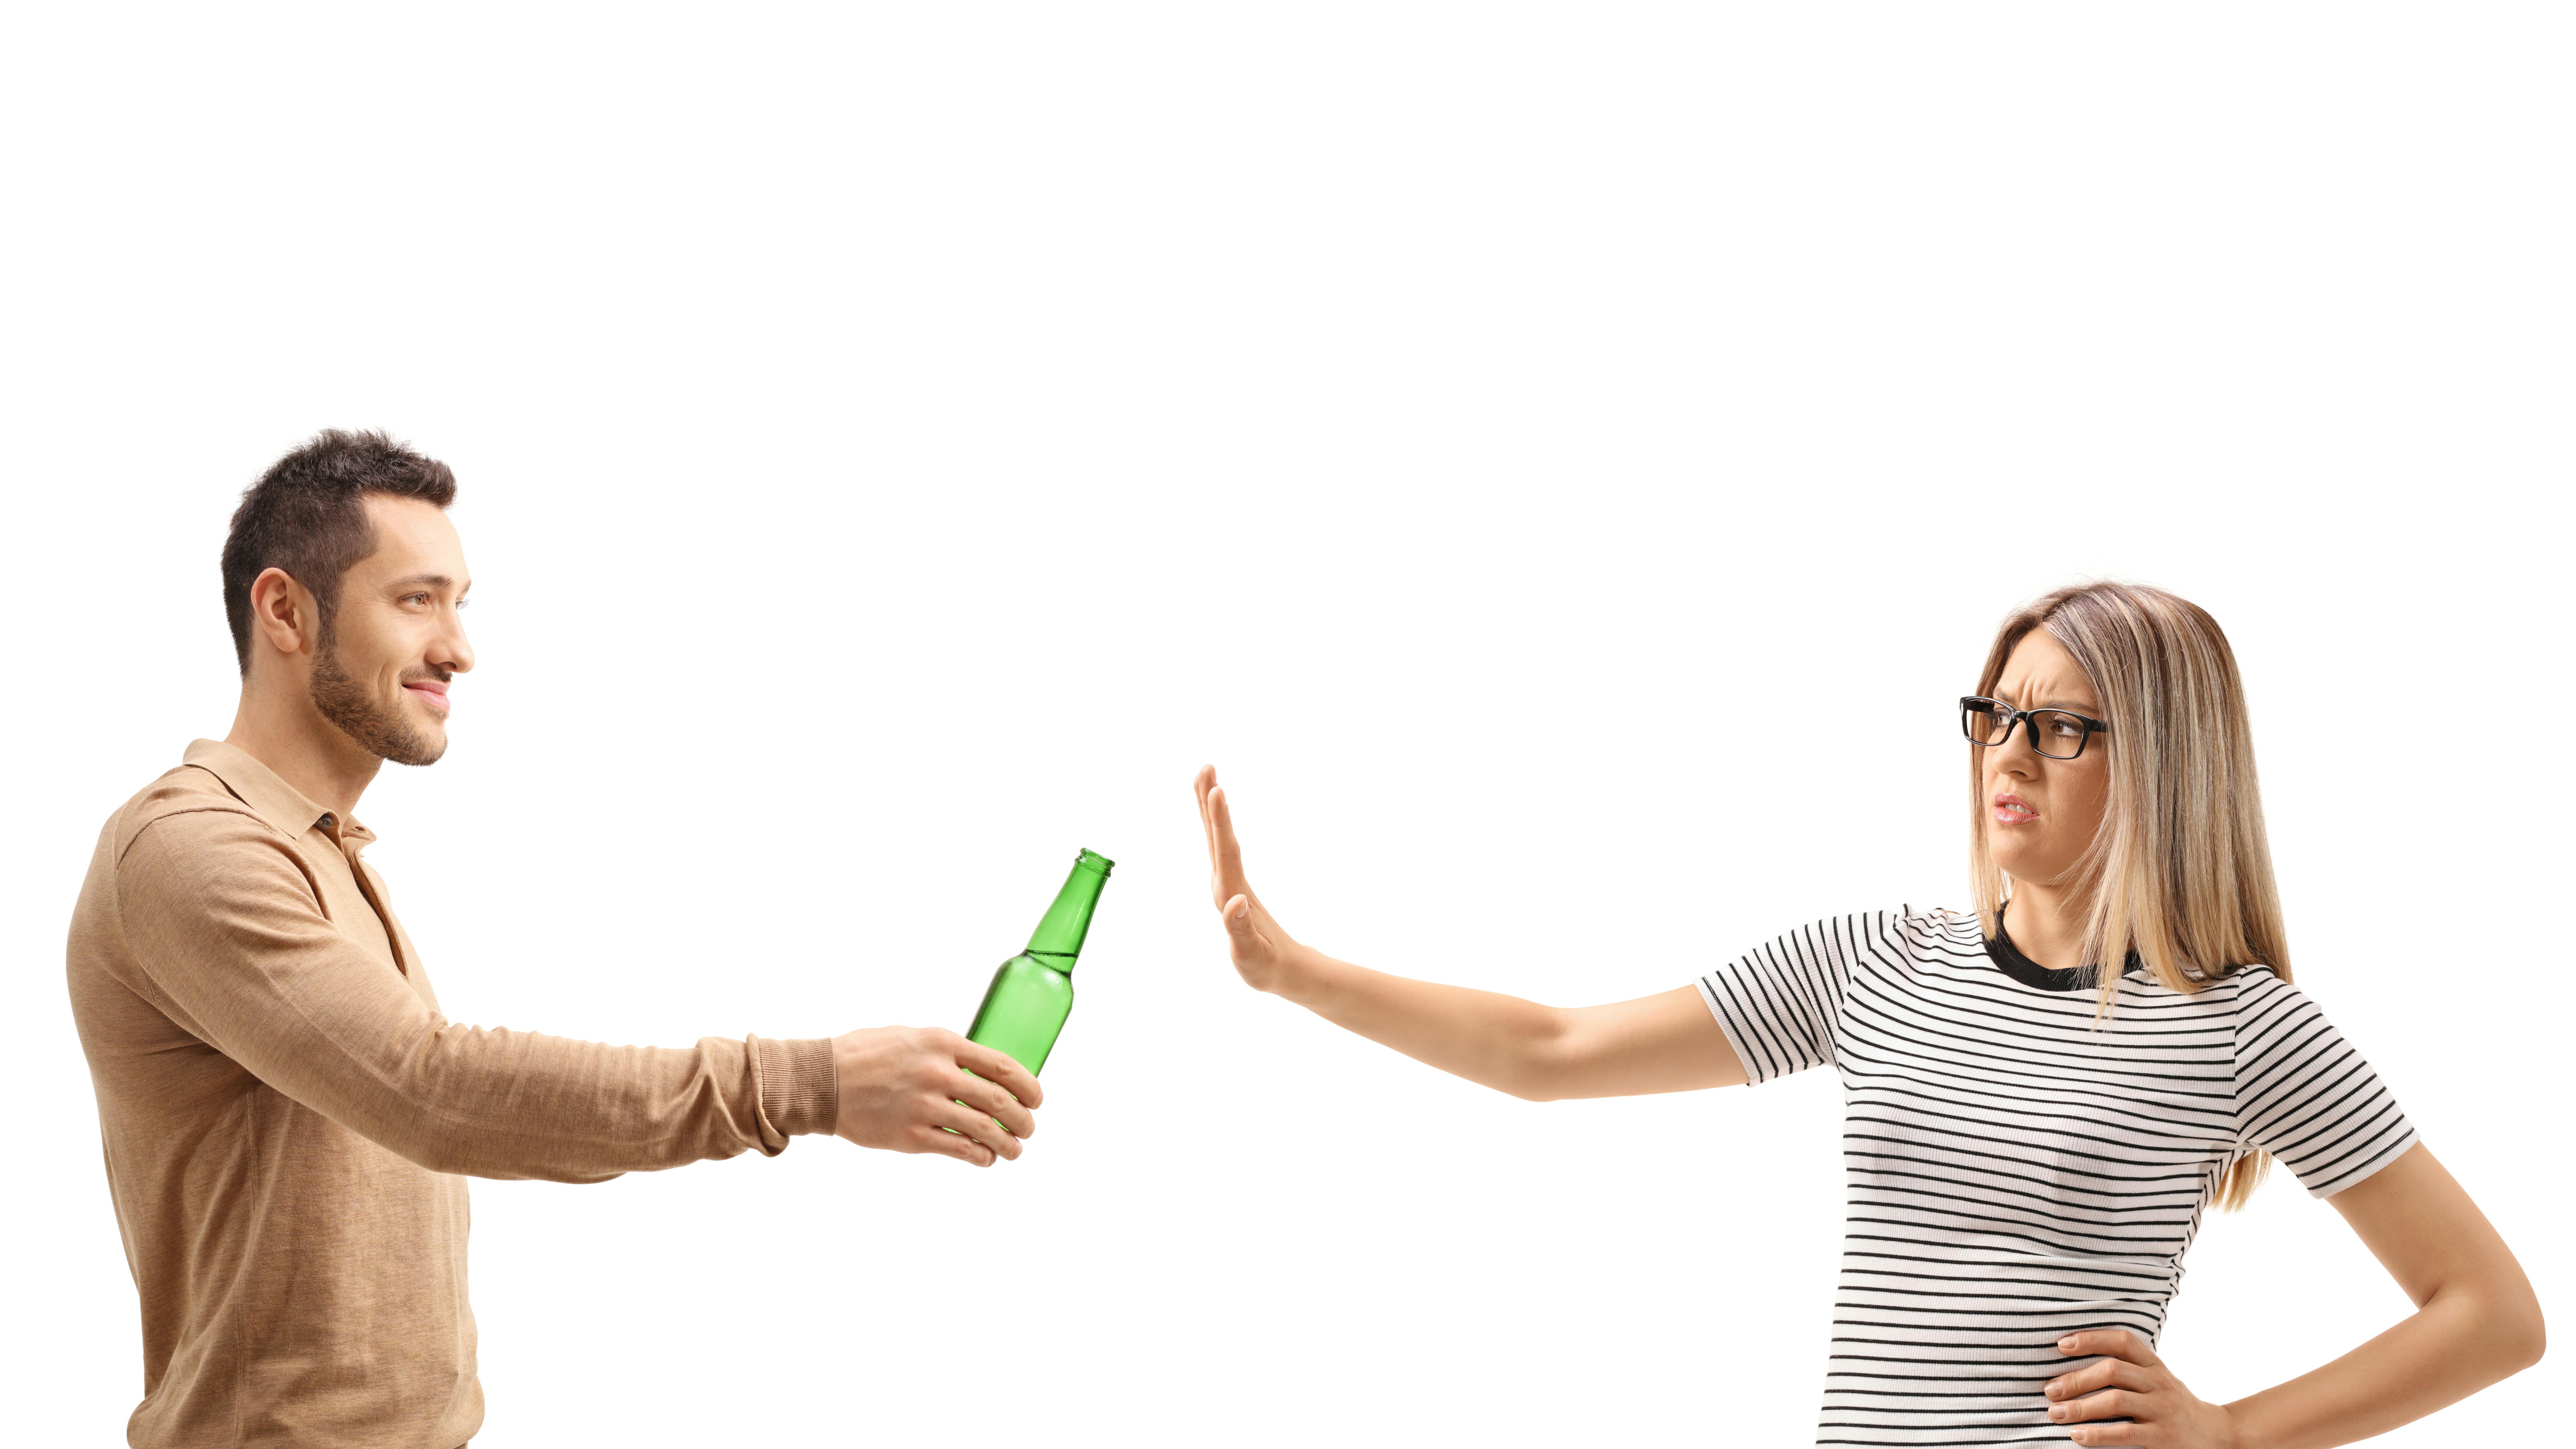 En mand holder en ølflaske frem med en kvinde